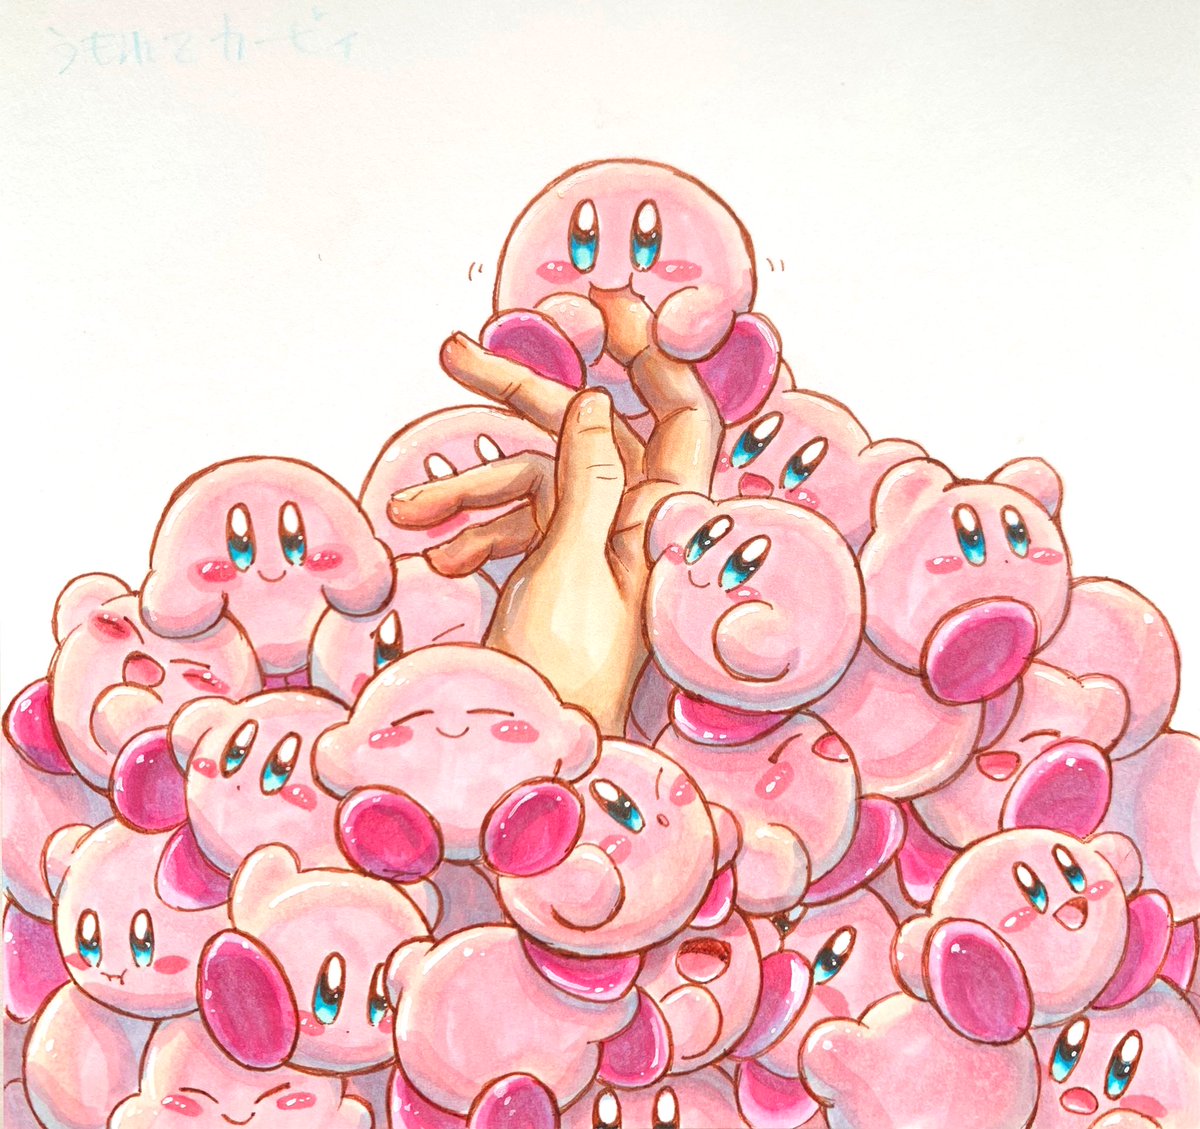 あら カービィ Pa Twitter 埋もれて カービィ イラスト コピック カービィ Illust Copic Kirby